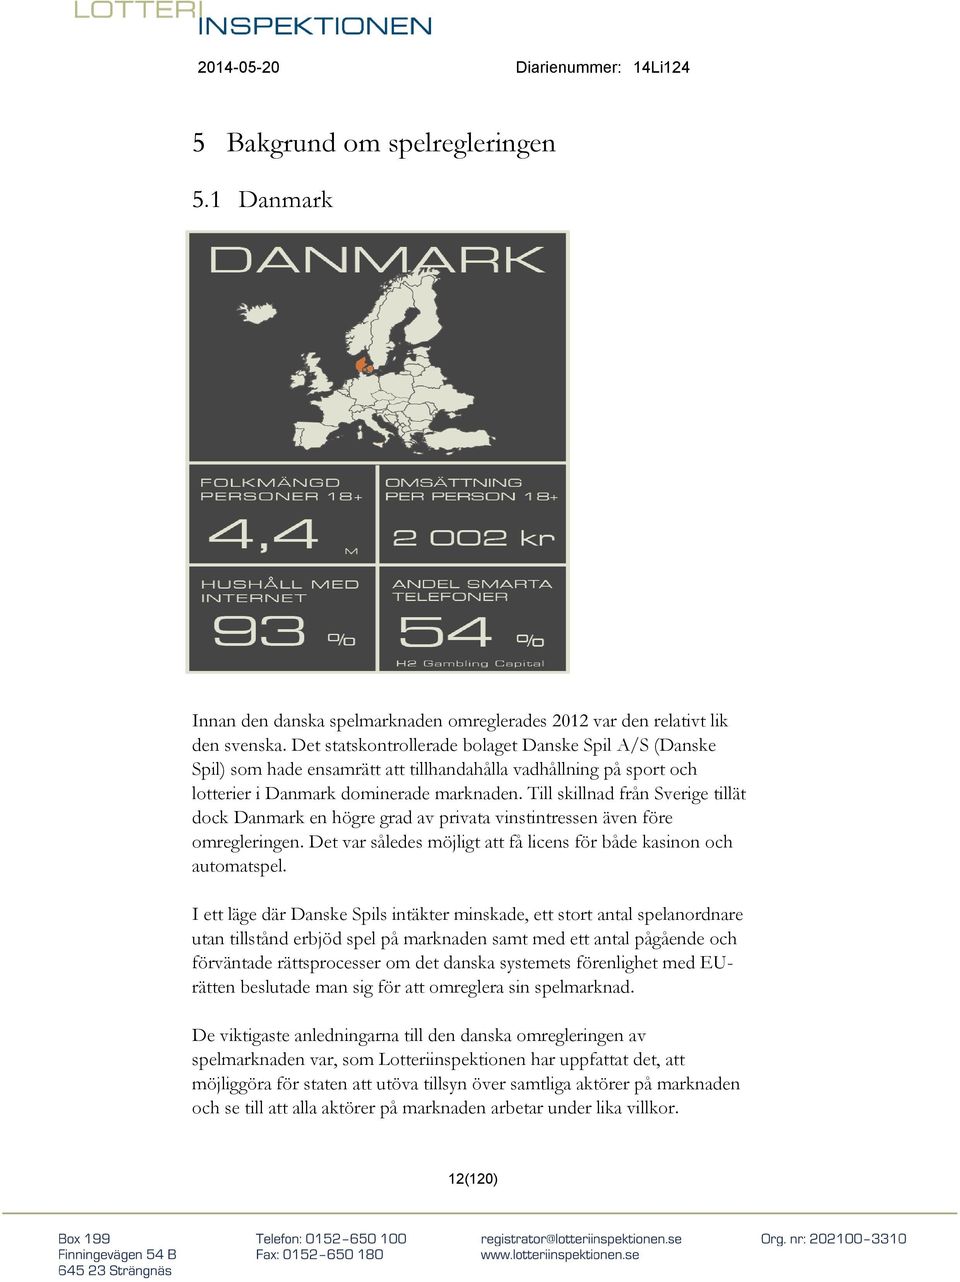 Till skillnad från Sverige tillät dock Danmark en högre grad av privata vinstintressen även före omregleringen. Det var således möjligt att få licens för både kasinon och automatspel.